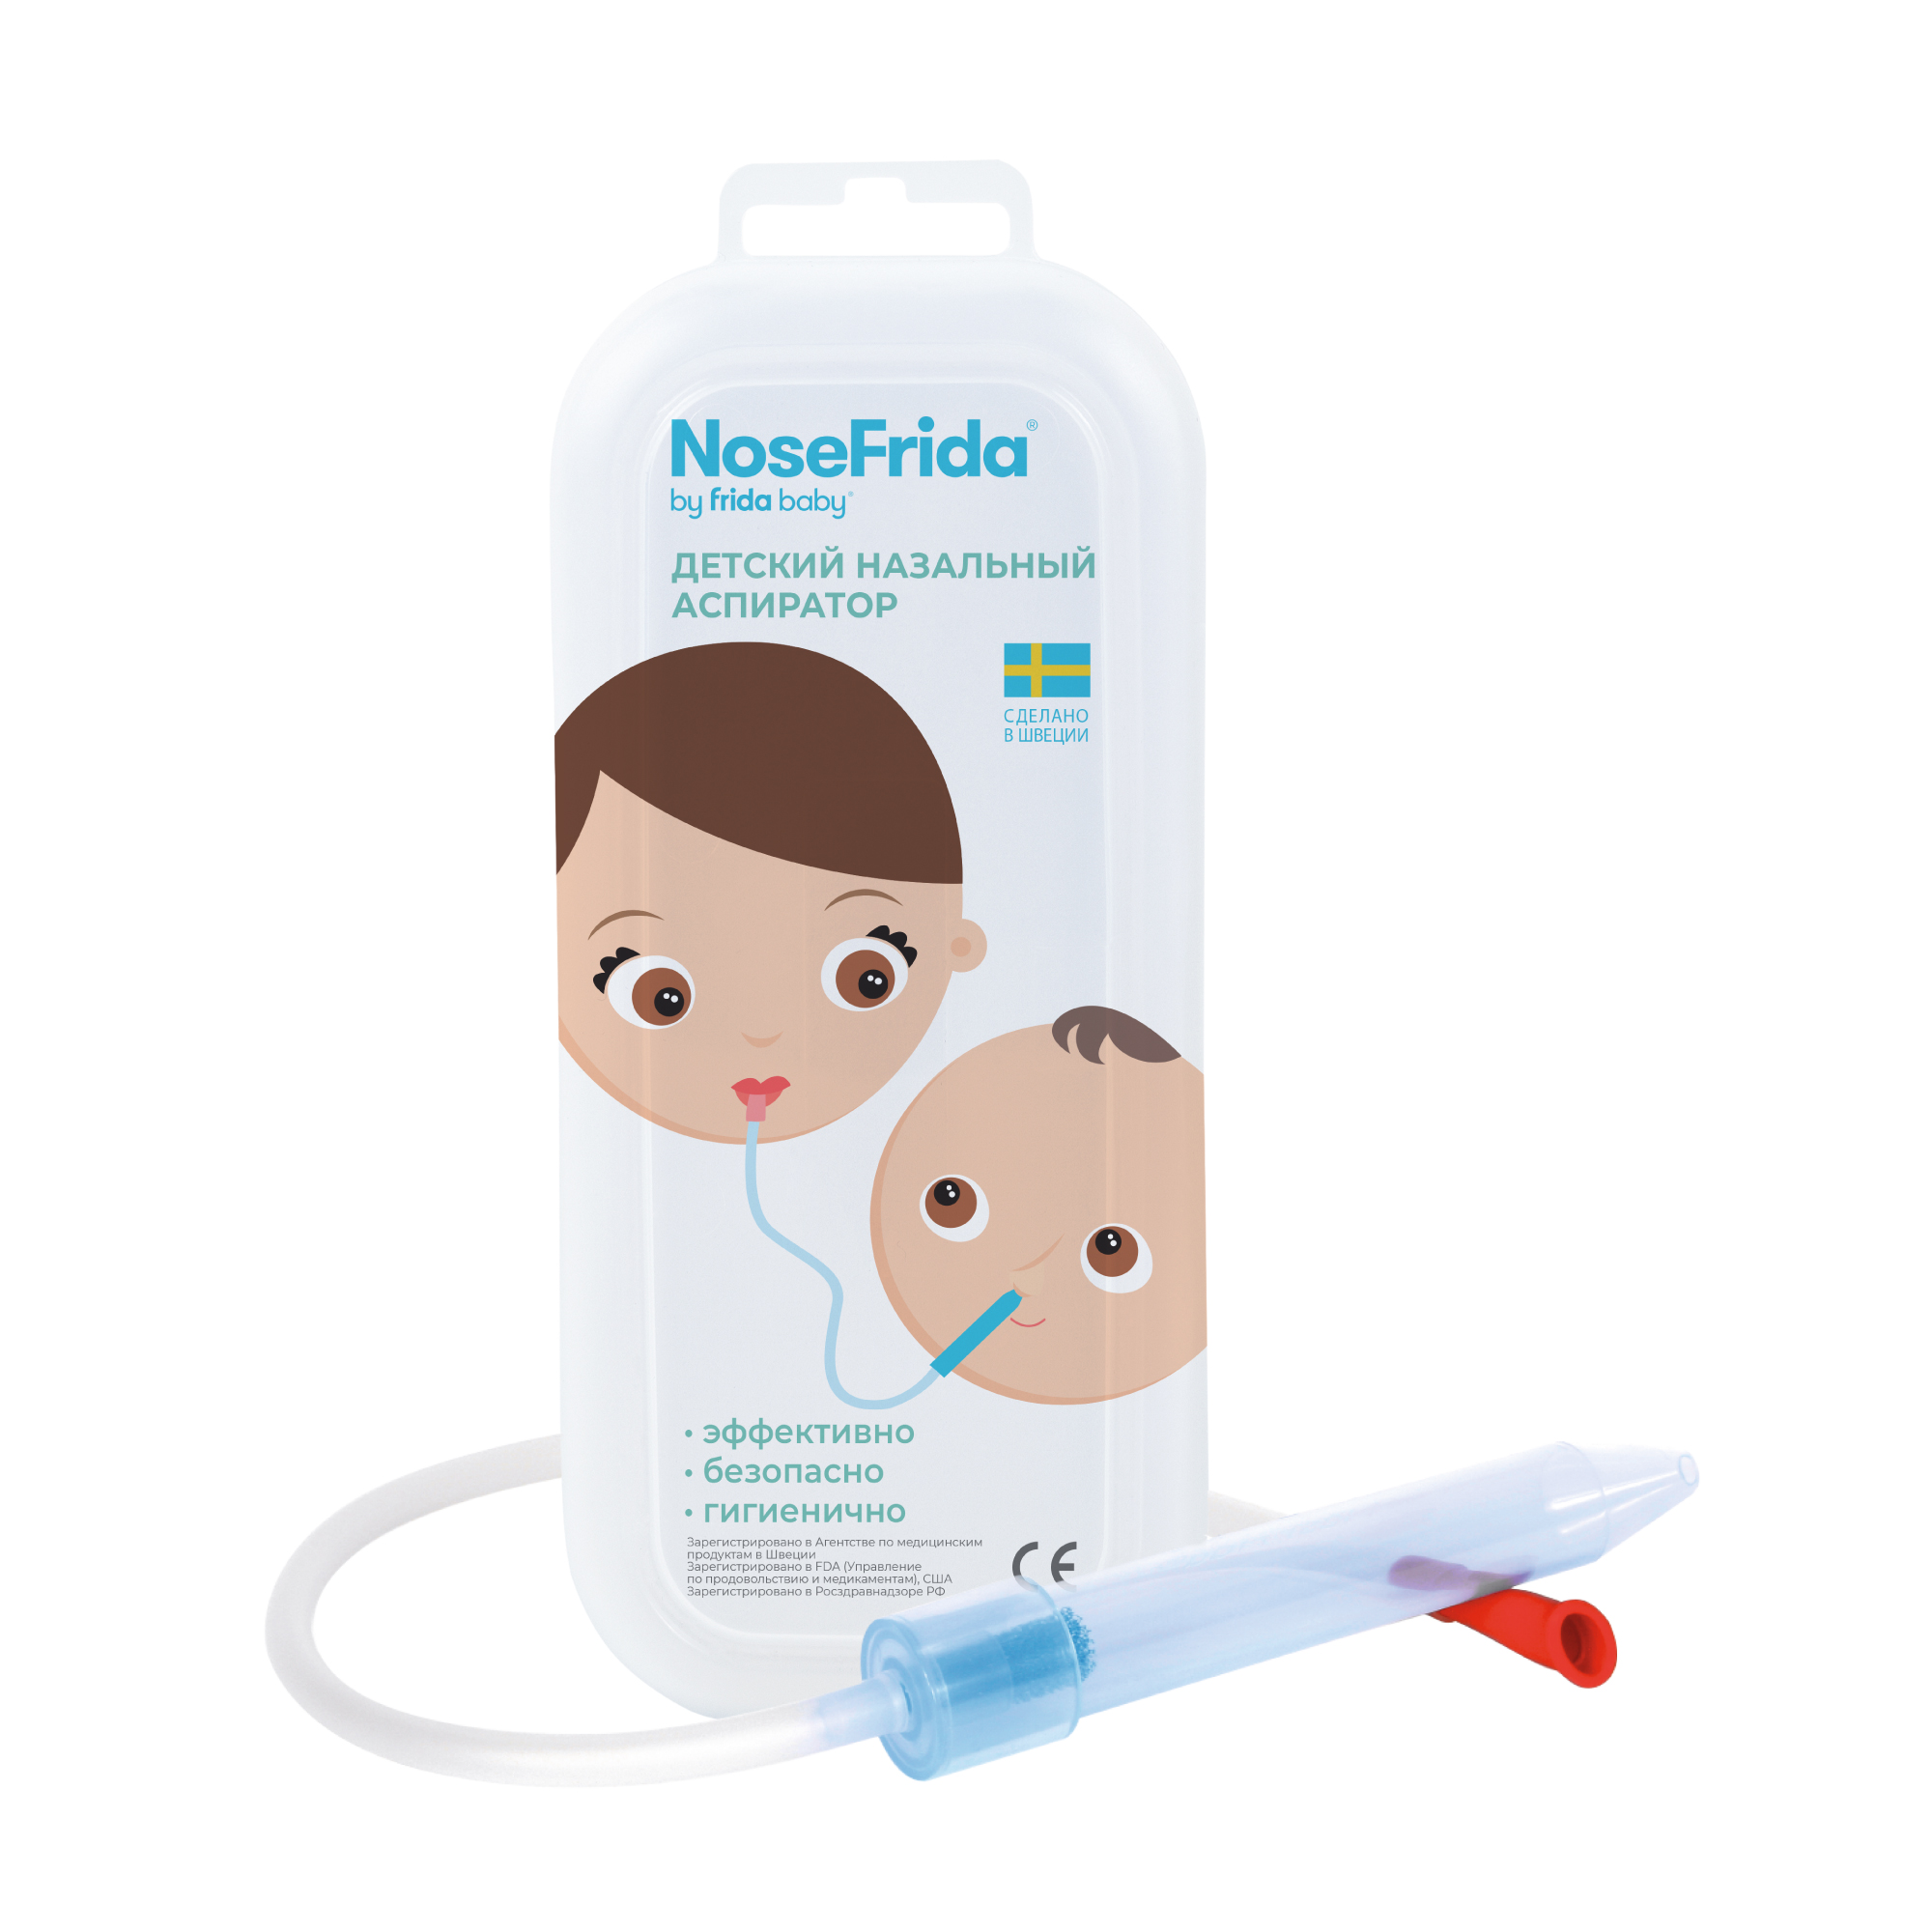 Nosefrida (Носфрида), аспиратор назальный для детей